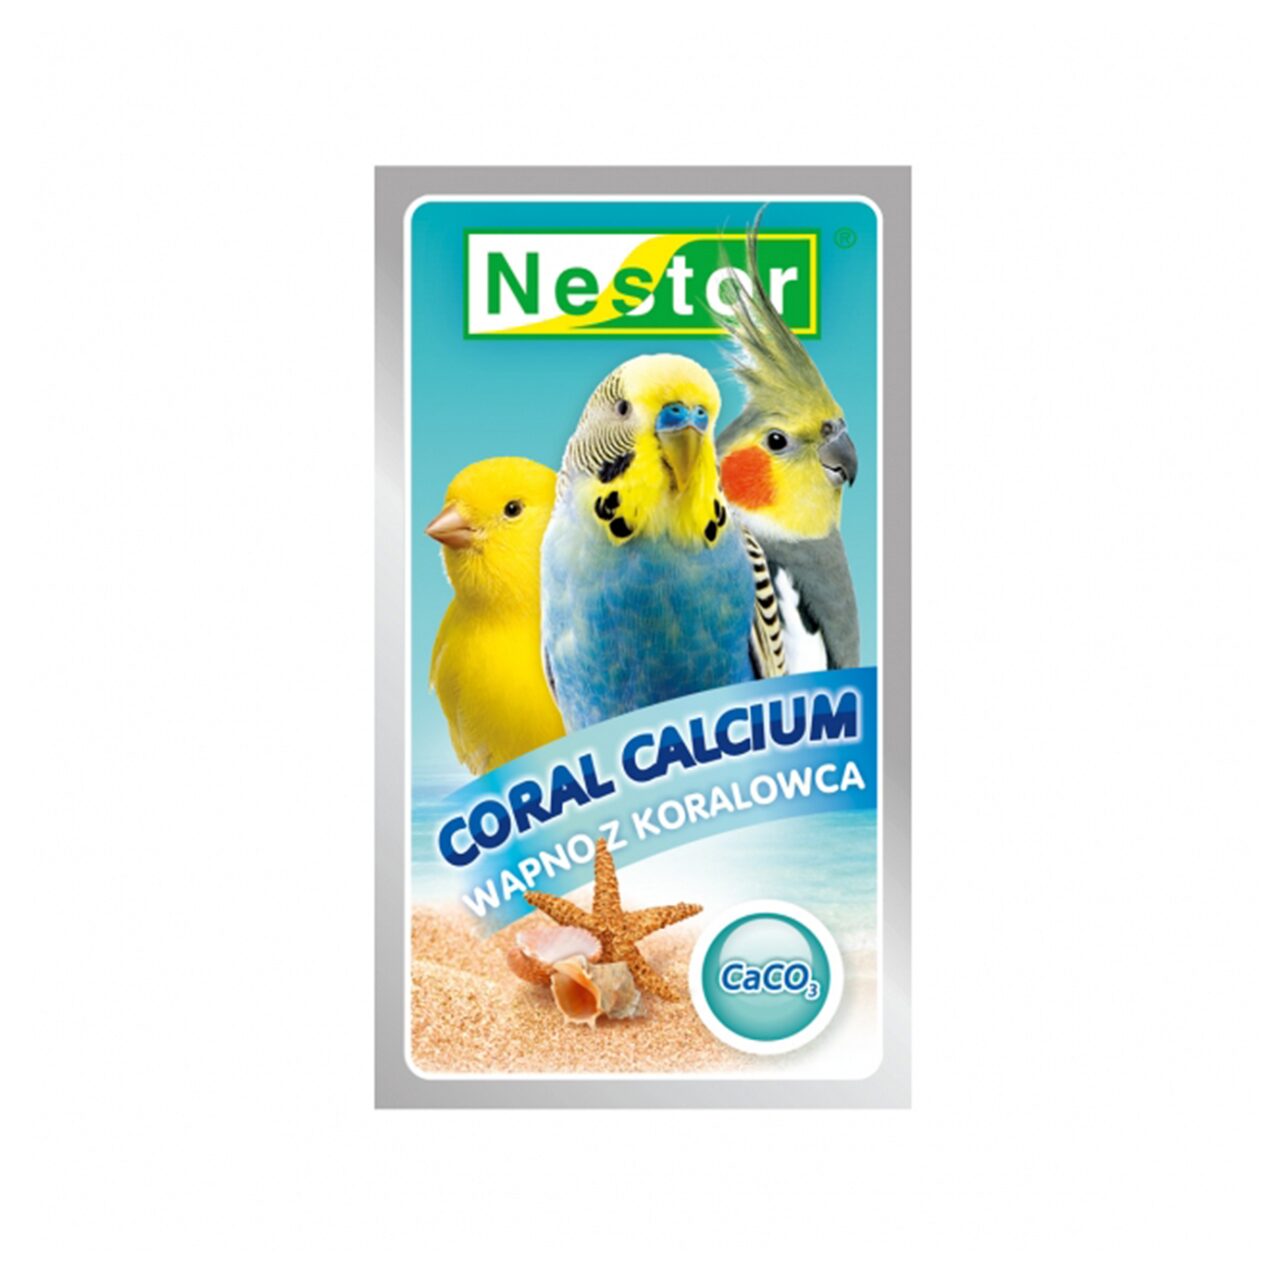 Calciu de corali pentru pasari exotice nestor 40g